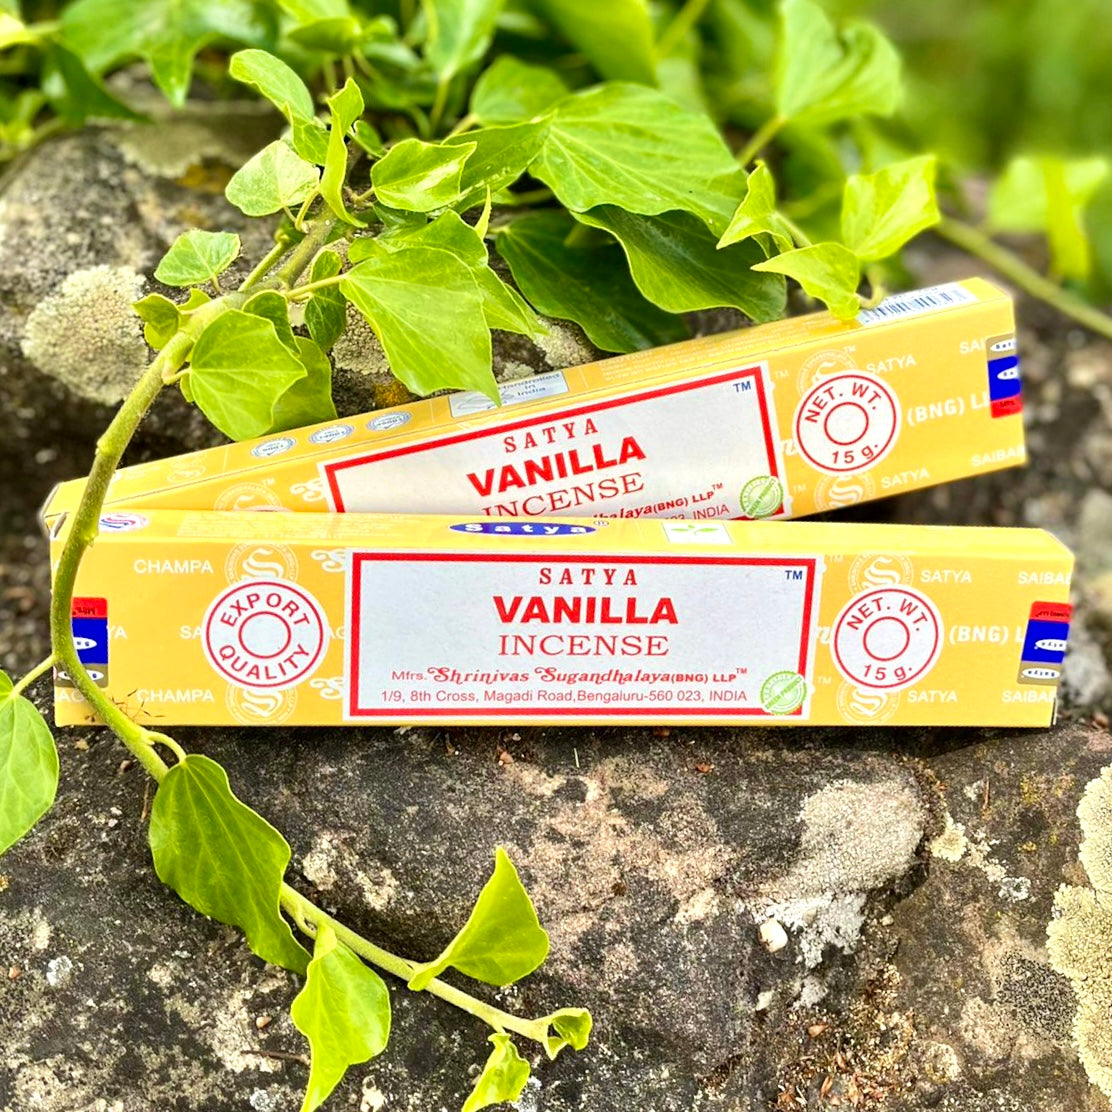 Räucherstäbchen Satya "Vanilla"